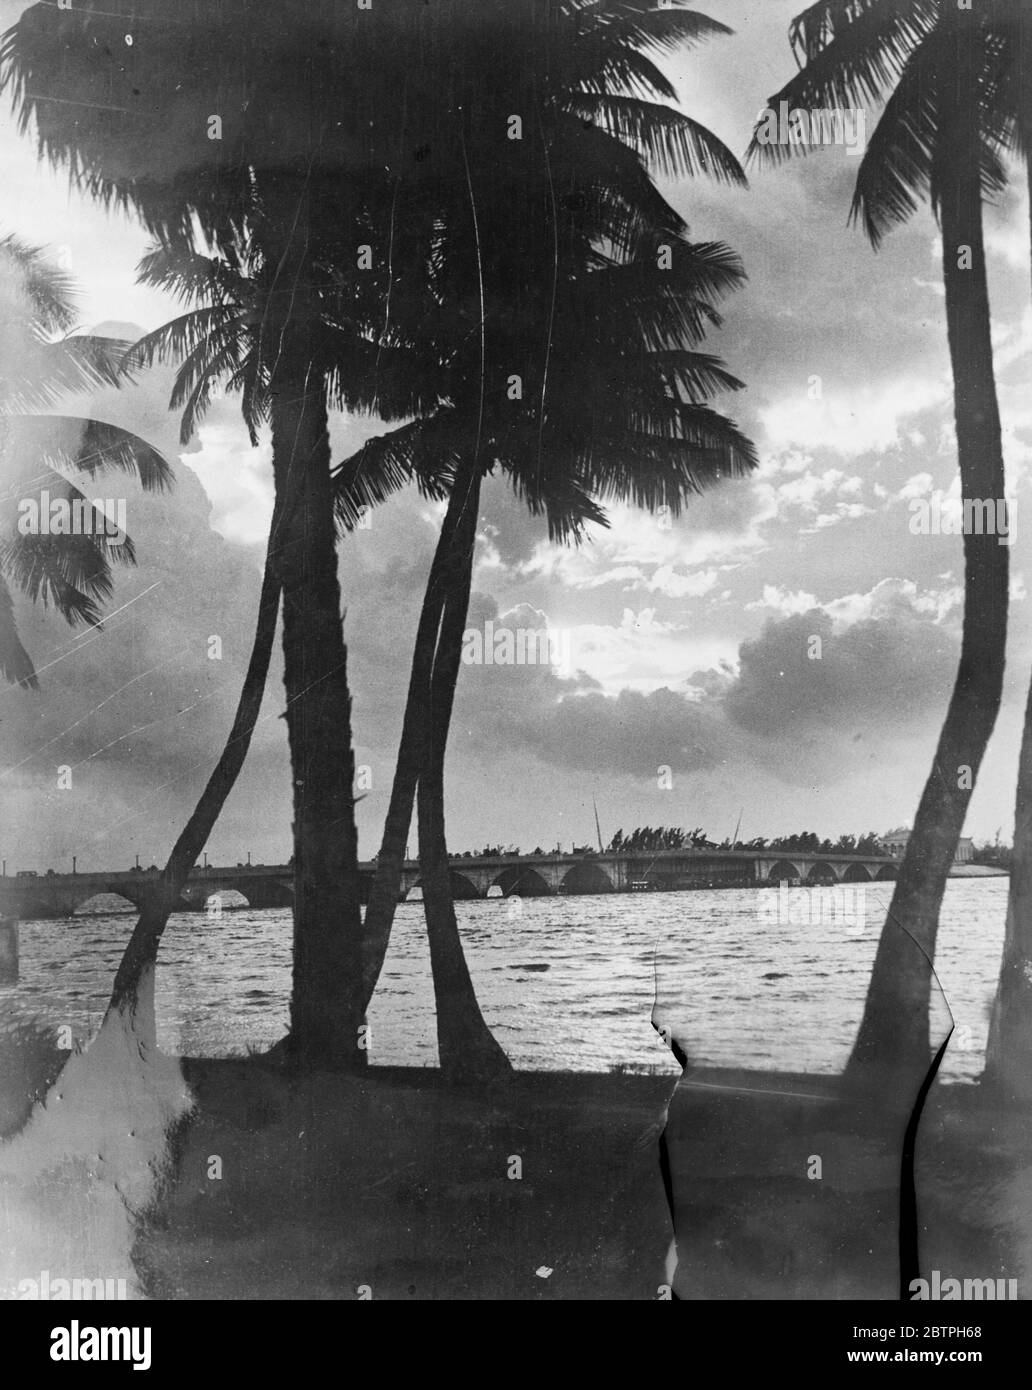 Ein Sonnenuntergang in Florida. Brechen durch die abgesenkten Wolken nach einem Regensturm, die untergehende Sonne schafft diese schöne Szene am Palm Beach, Florida. Die Brücke im Hintergrund trennt Palm Beach von West Palm Beach. 23. Januar 1932 Stockfoto